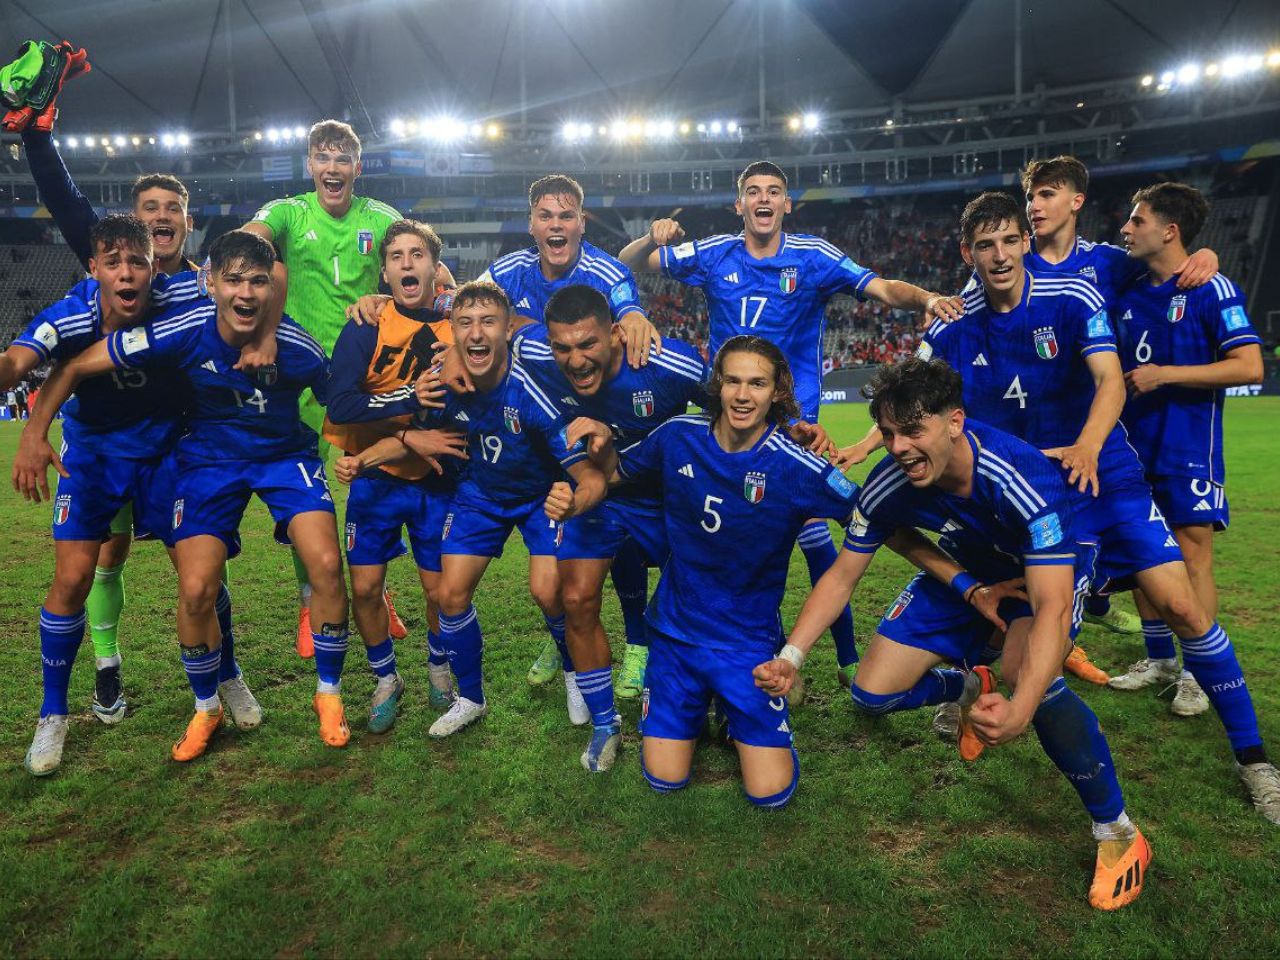 Inseguendo un goal, stasera l’Under 20 porta l’Italia in finale ai mondiali